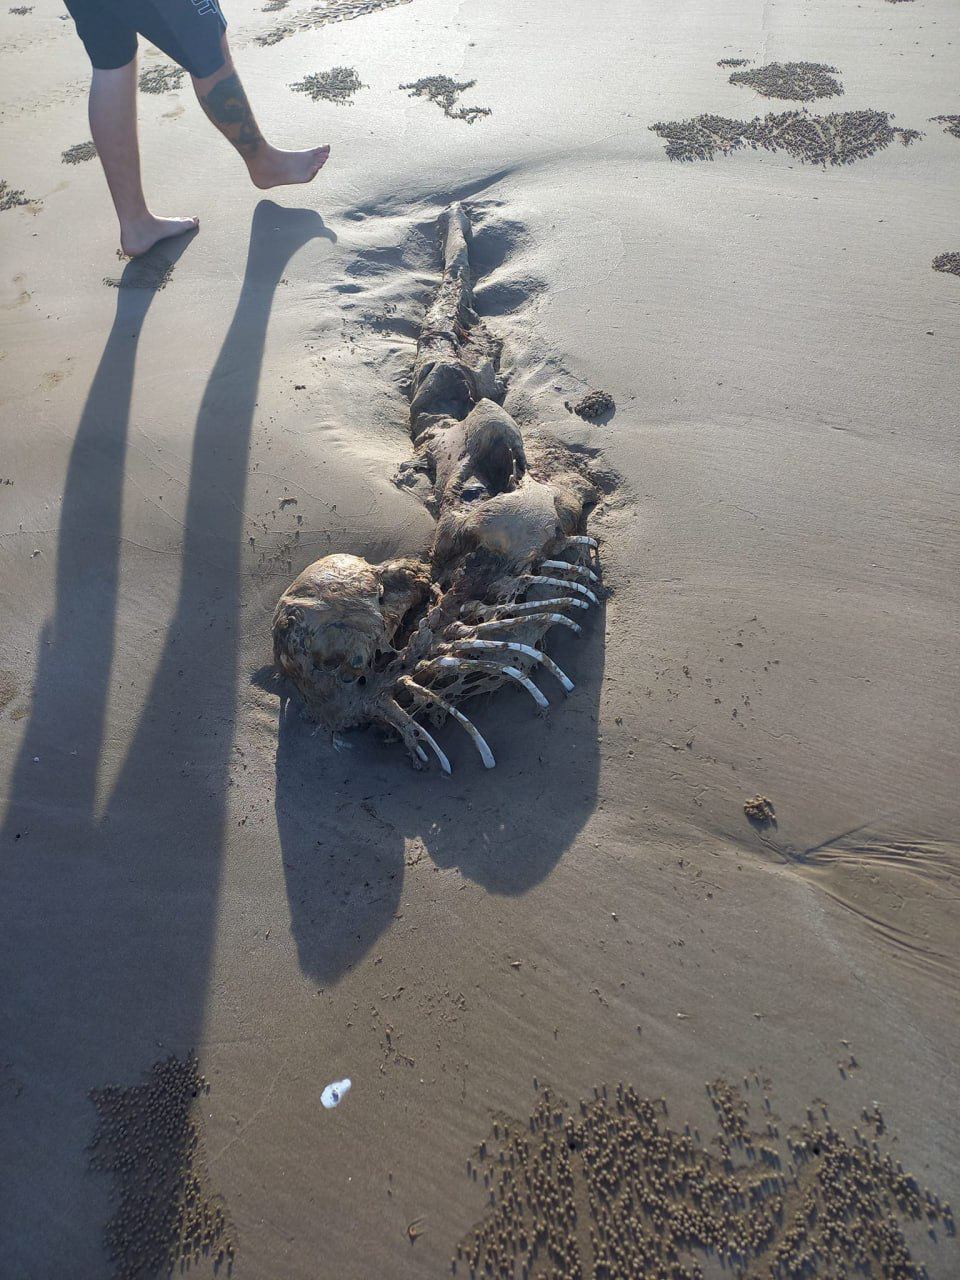 Жуткий скелет нашли в Австралии: считается, что это ''инопланетная русалка'' (фото)